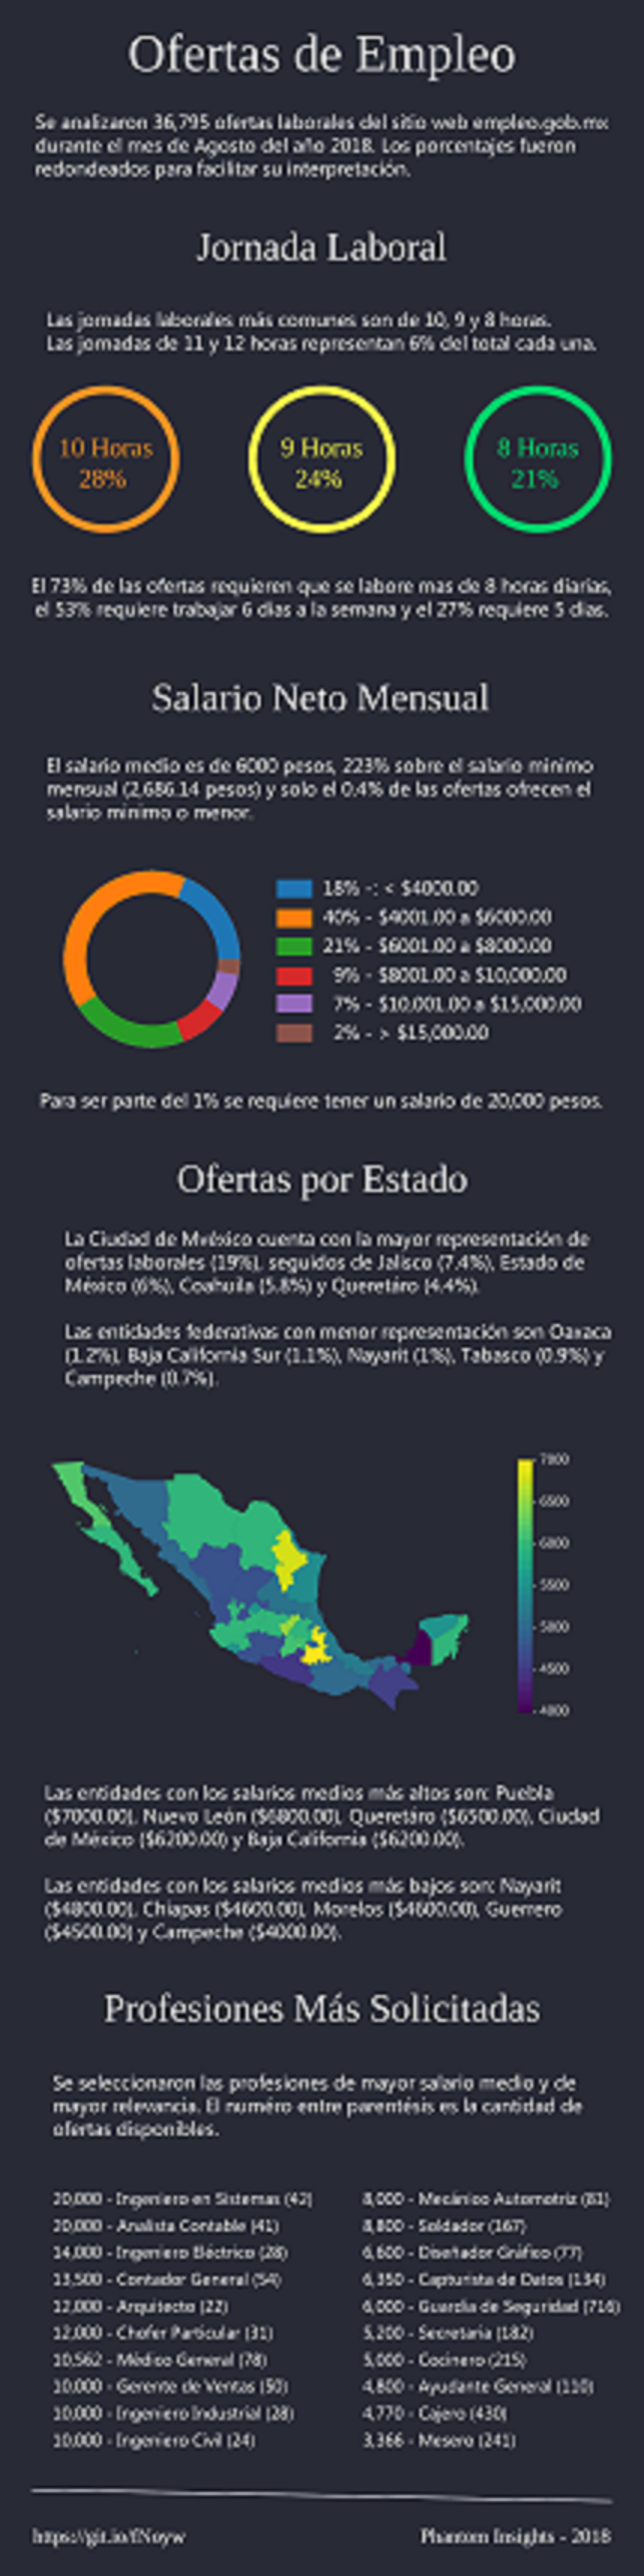 ¡Ouch! La mitad de los trabajadores gubernamentales en México, gana menos de 6 mil pesos